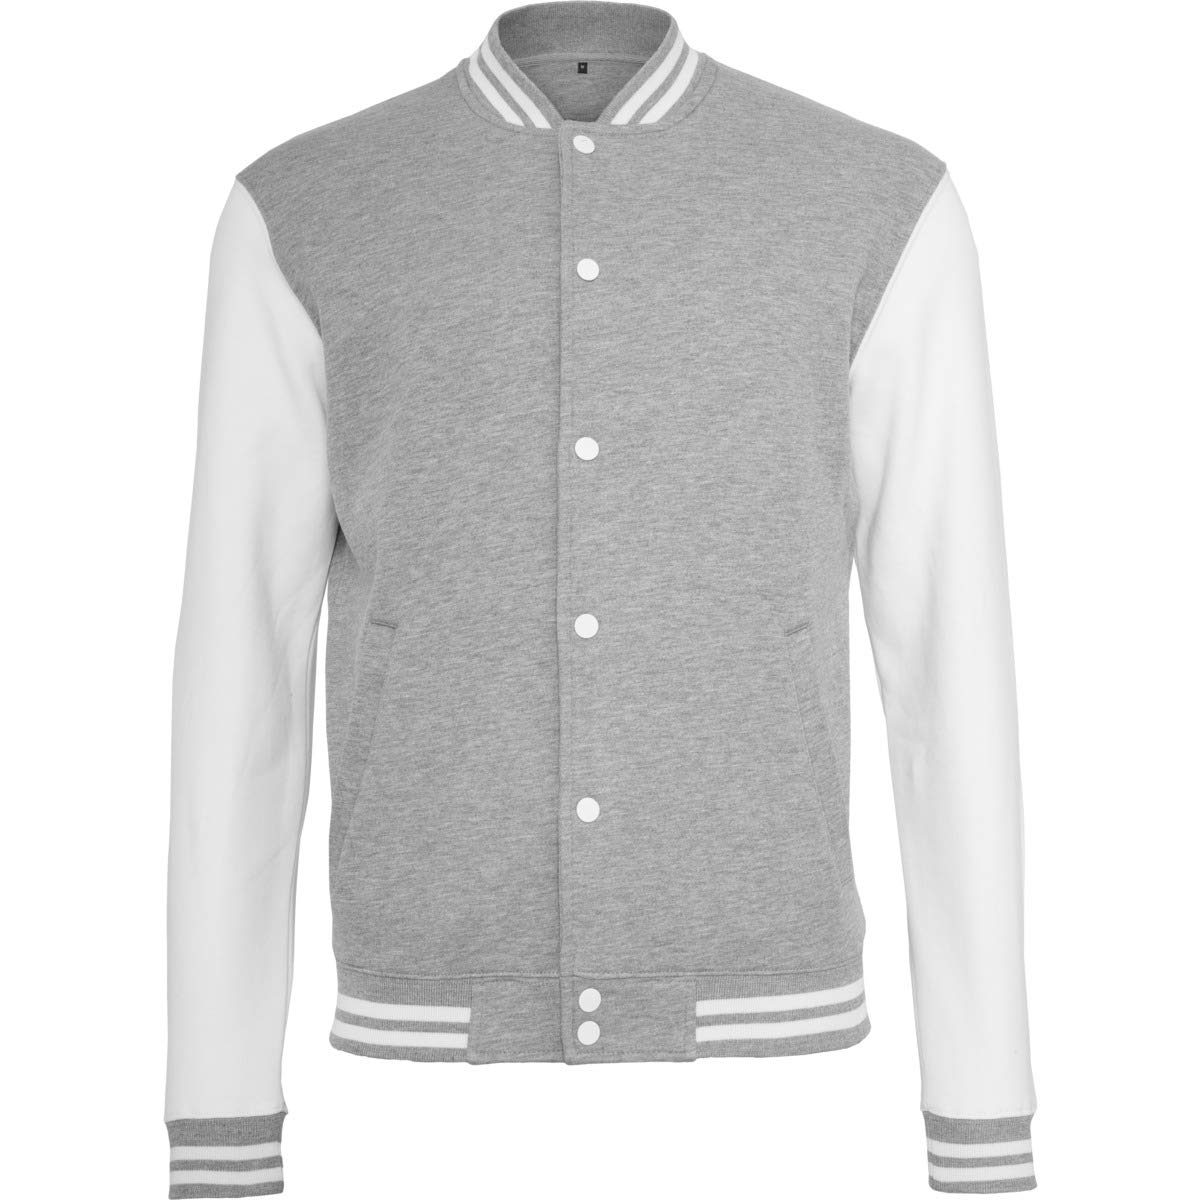 Build Your Brand Herren Sweat College Jacket Jacke, per pack Mehrfarbig (H.Grey/White 00659), X-Large (Herstellergröße: XL)